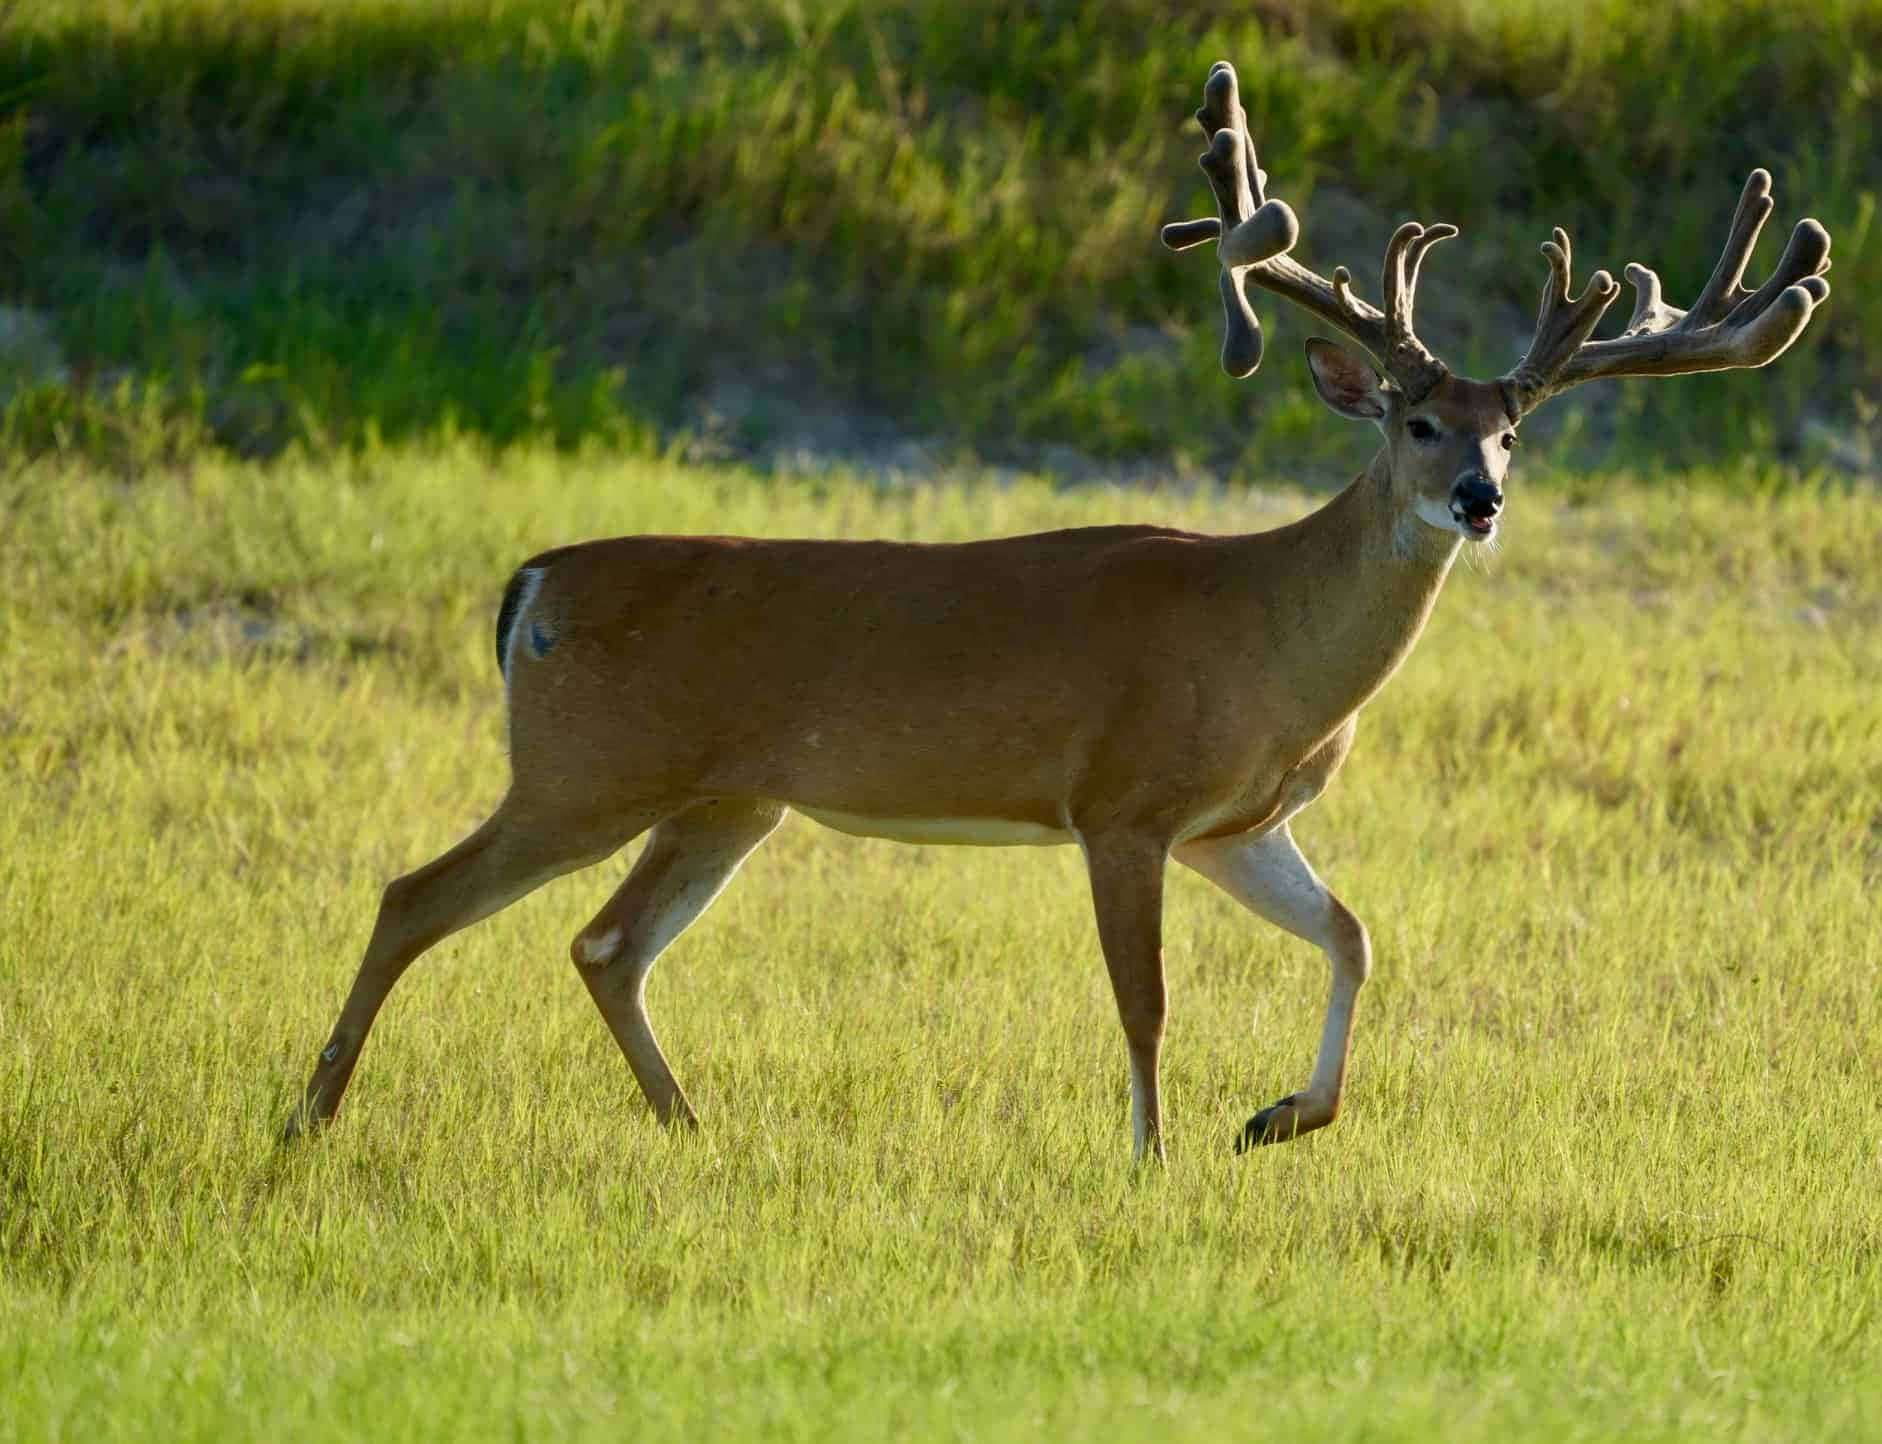 a deer is walking through a grassy field